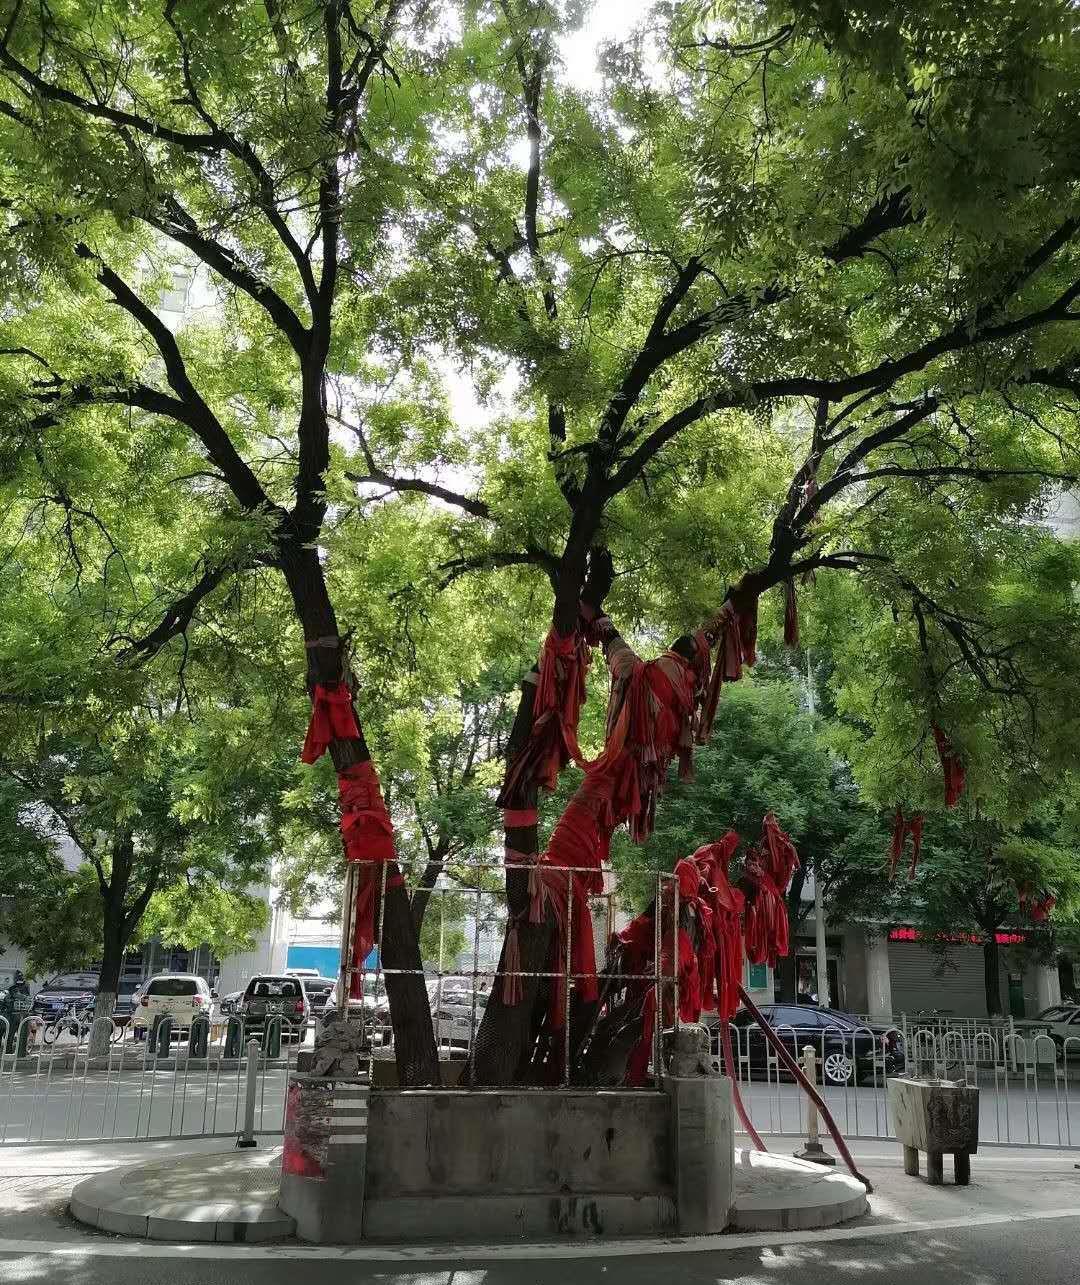 济宁古槐路附属医院附近有一棵大槐树,名叫山阳古槐,几乎所有的济宁人